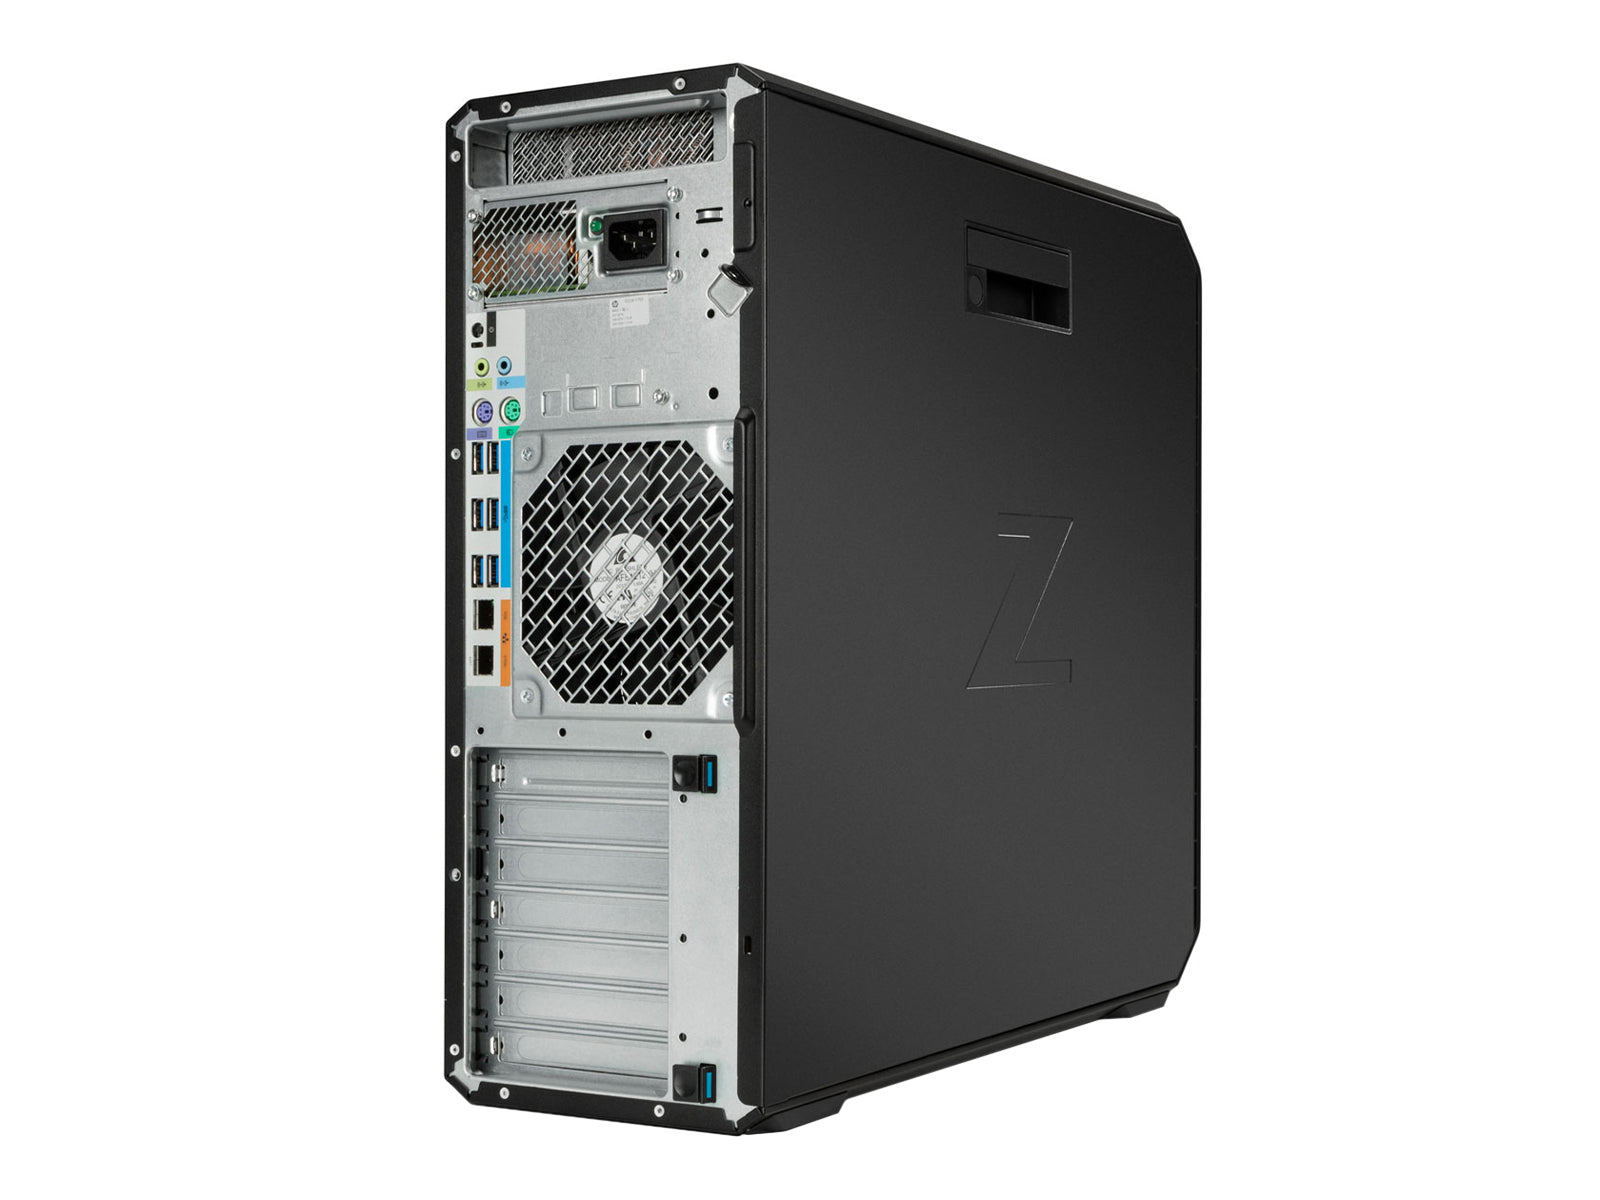 HP Z6 G4 | Intel Xeon Platinum 8173M | 64 GB DDR4 | 512 GB NVMe M.2 SSD | MXRT 7600 | Win10